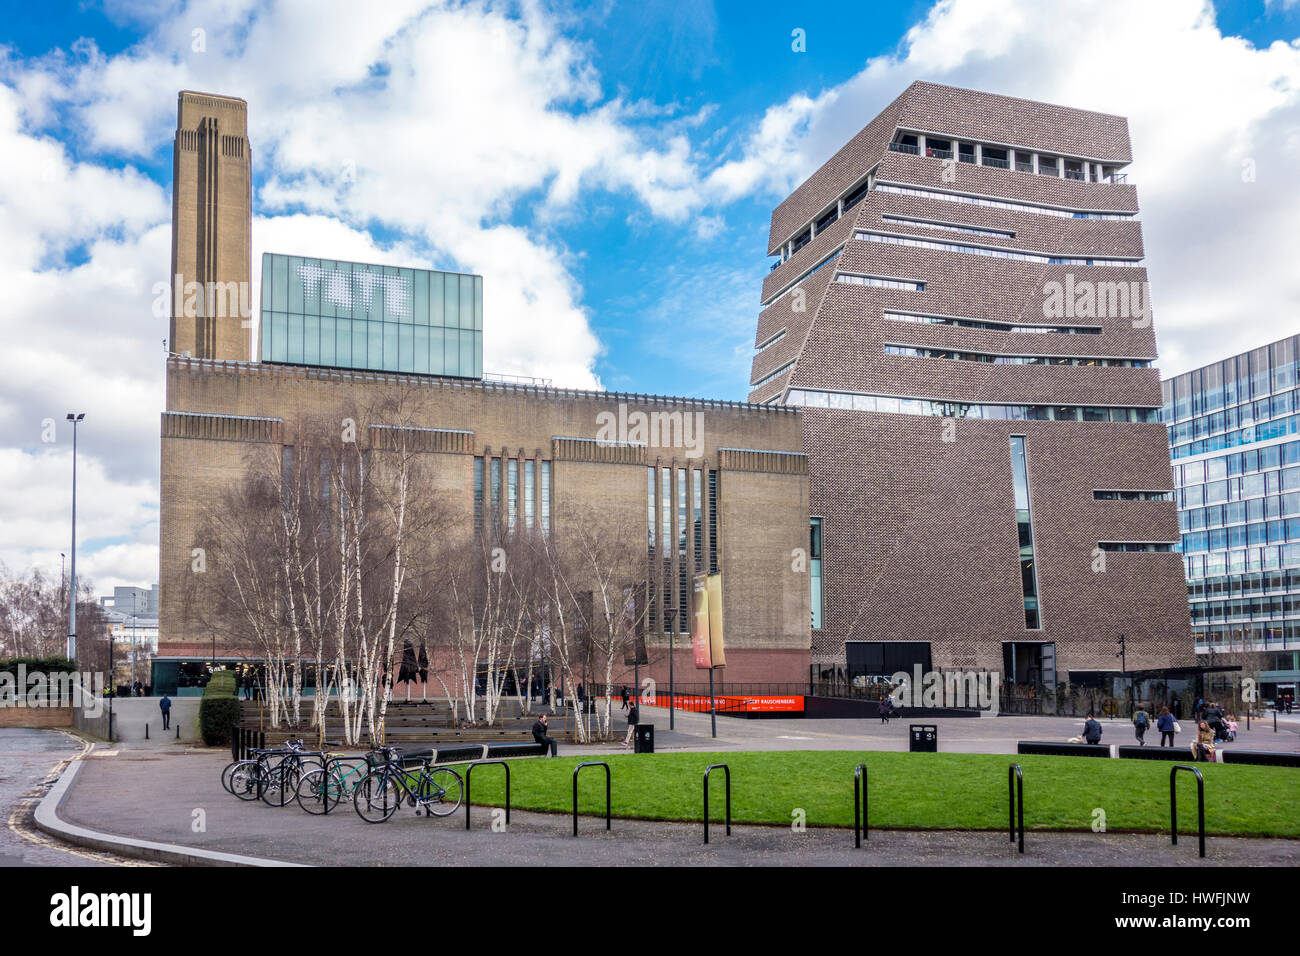 L'interrupteur extérieur de Tate Modern House par Herzog & de Meuron vue d'une rue publique, Bankside, Londres, UK Banque D'Images